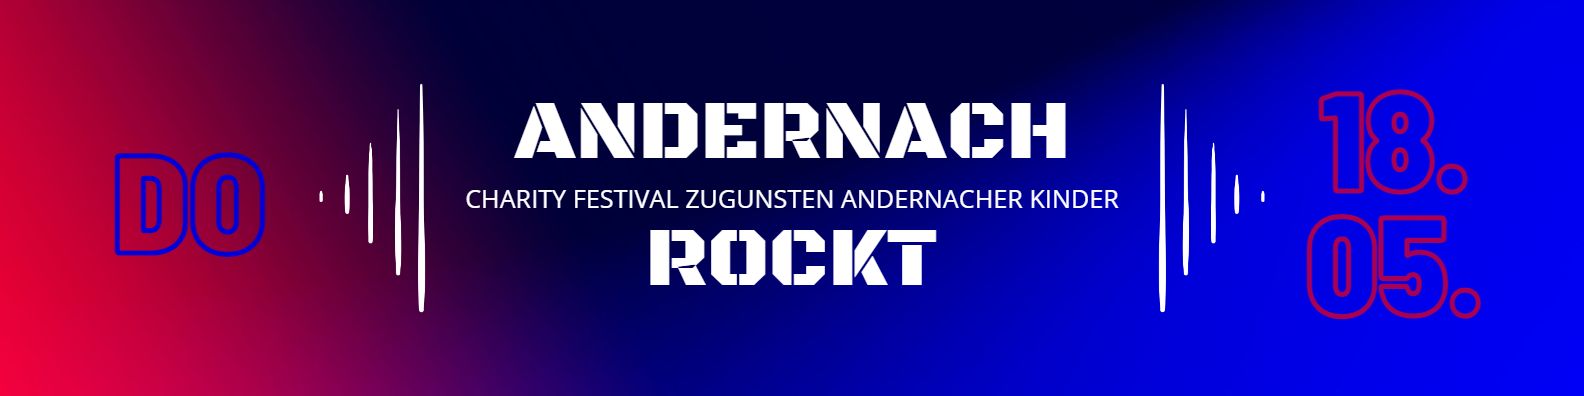 Teaserbild zum Open Air Konzert Andernach Rockt